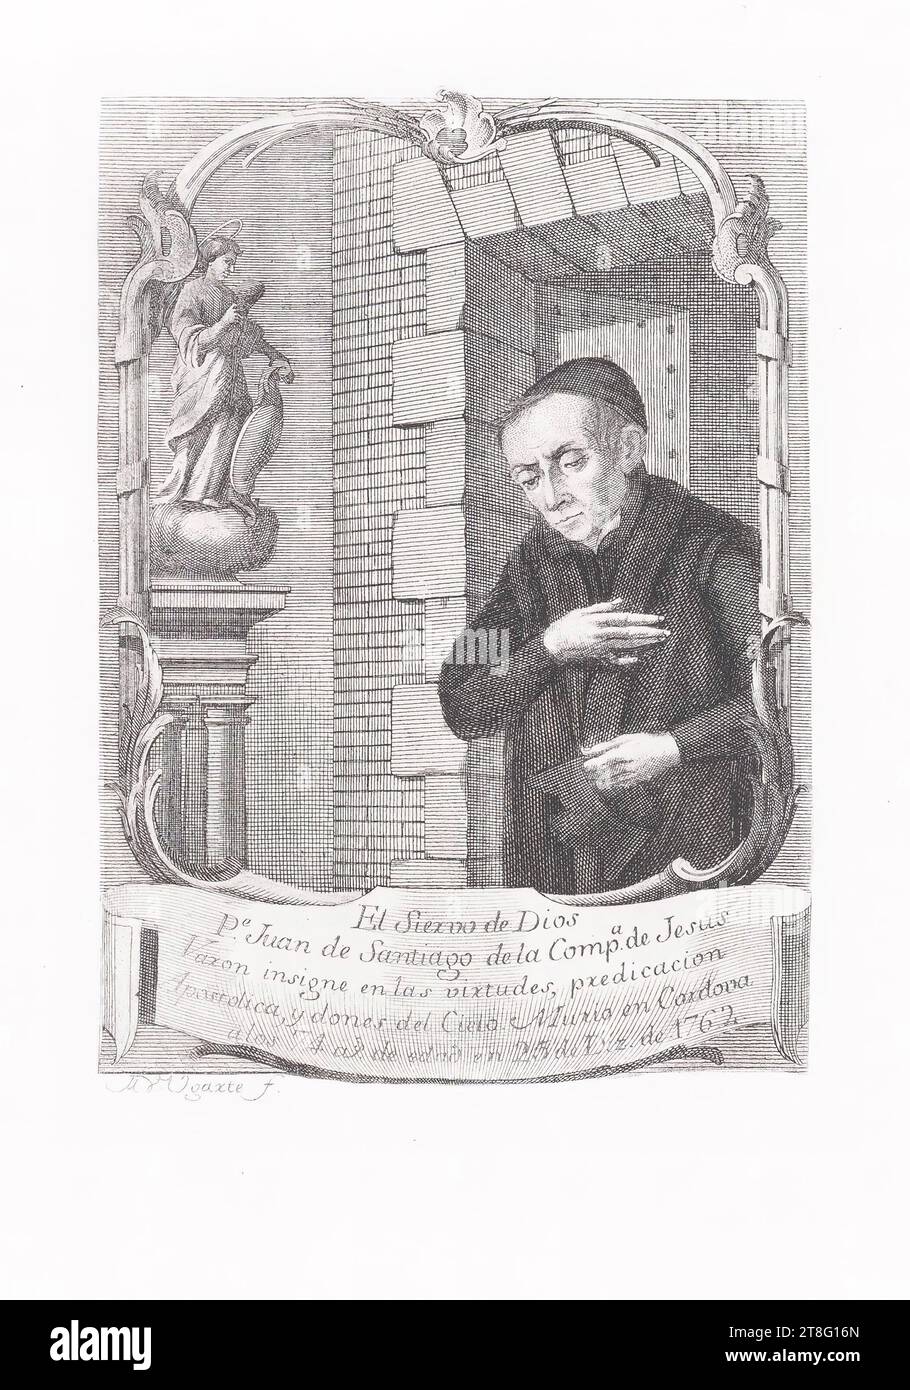 Il nome dell'artista non è leggibile. Il Siex... Di Dio, P.e Juan de Santiago de la Comp.a de Jesus, distinse Vaxon nelle virtù, nella predicazione, nell'apostolico e nei doni del cielo. Morì a Cordova, all'età di 74 anni, il 25 di Diz, 1762. ... Ugaxte Foto Stock